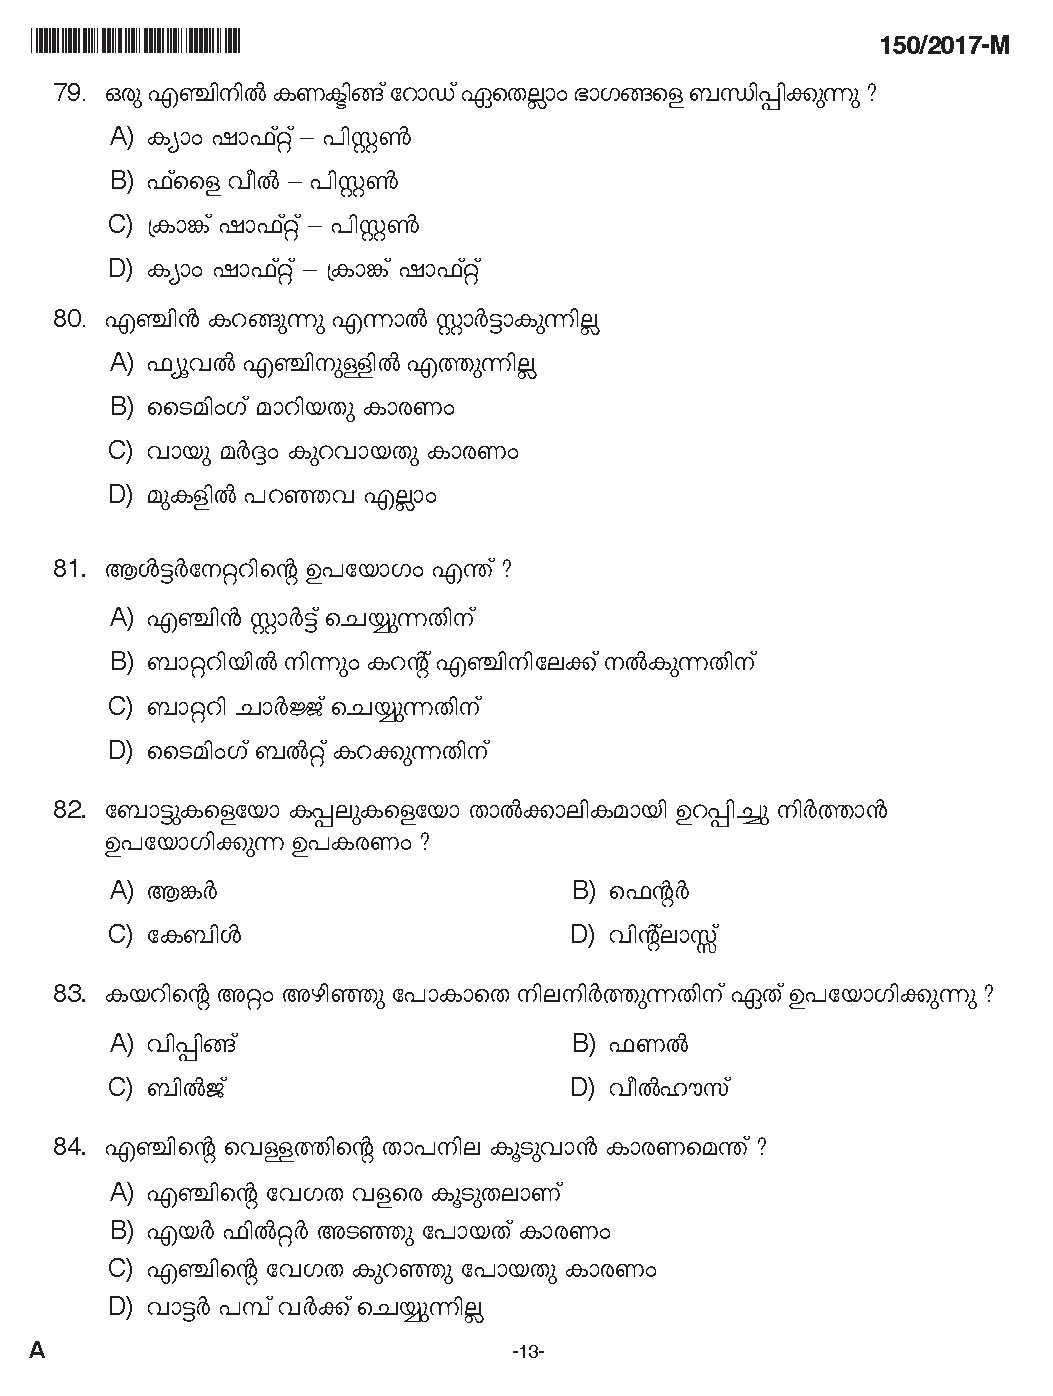 Kerala PSC Boat Deckman Exam Question Code 1502017 M 12